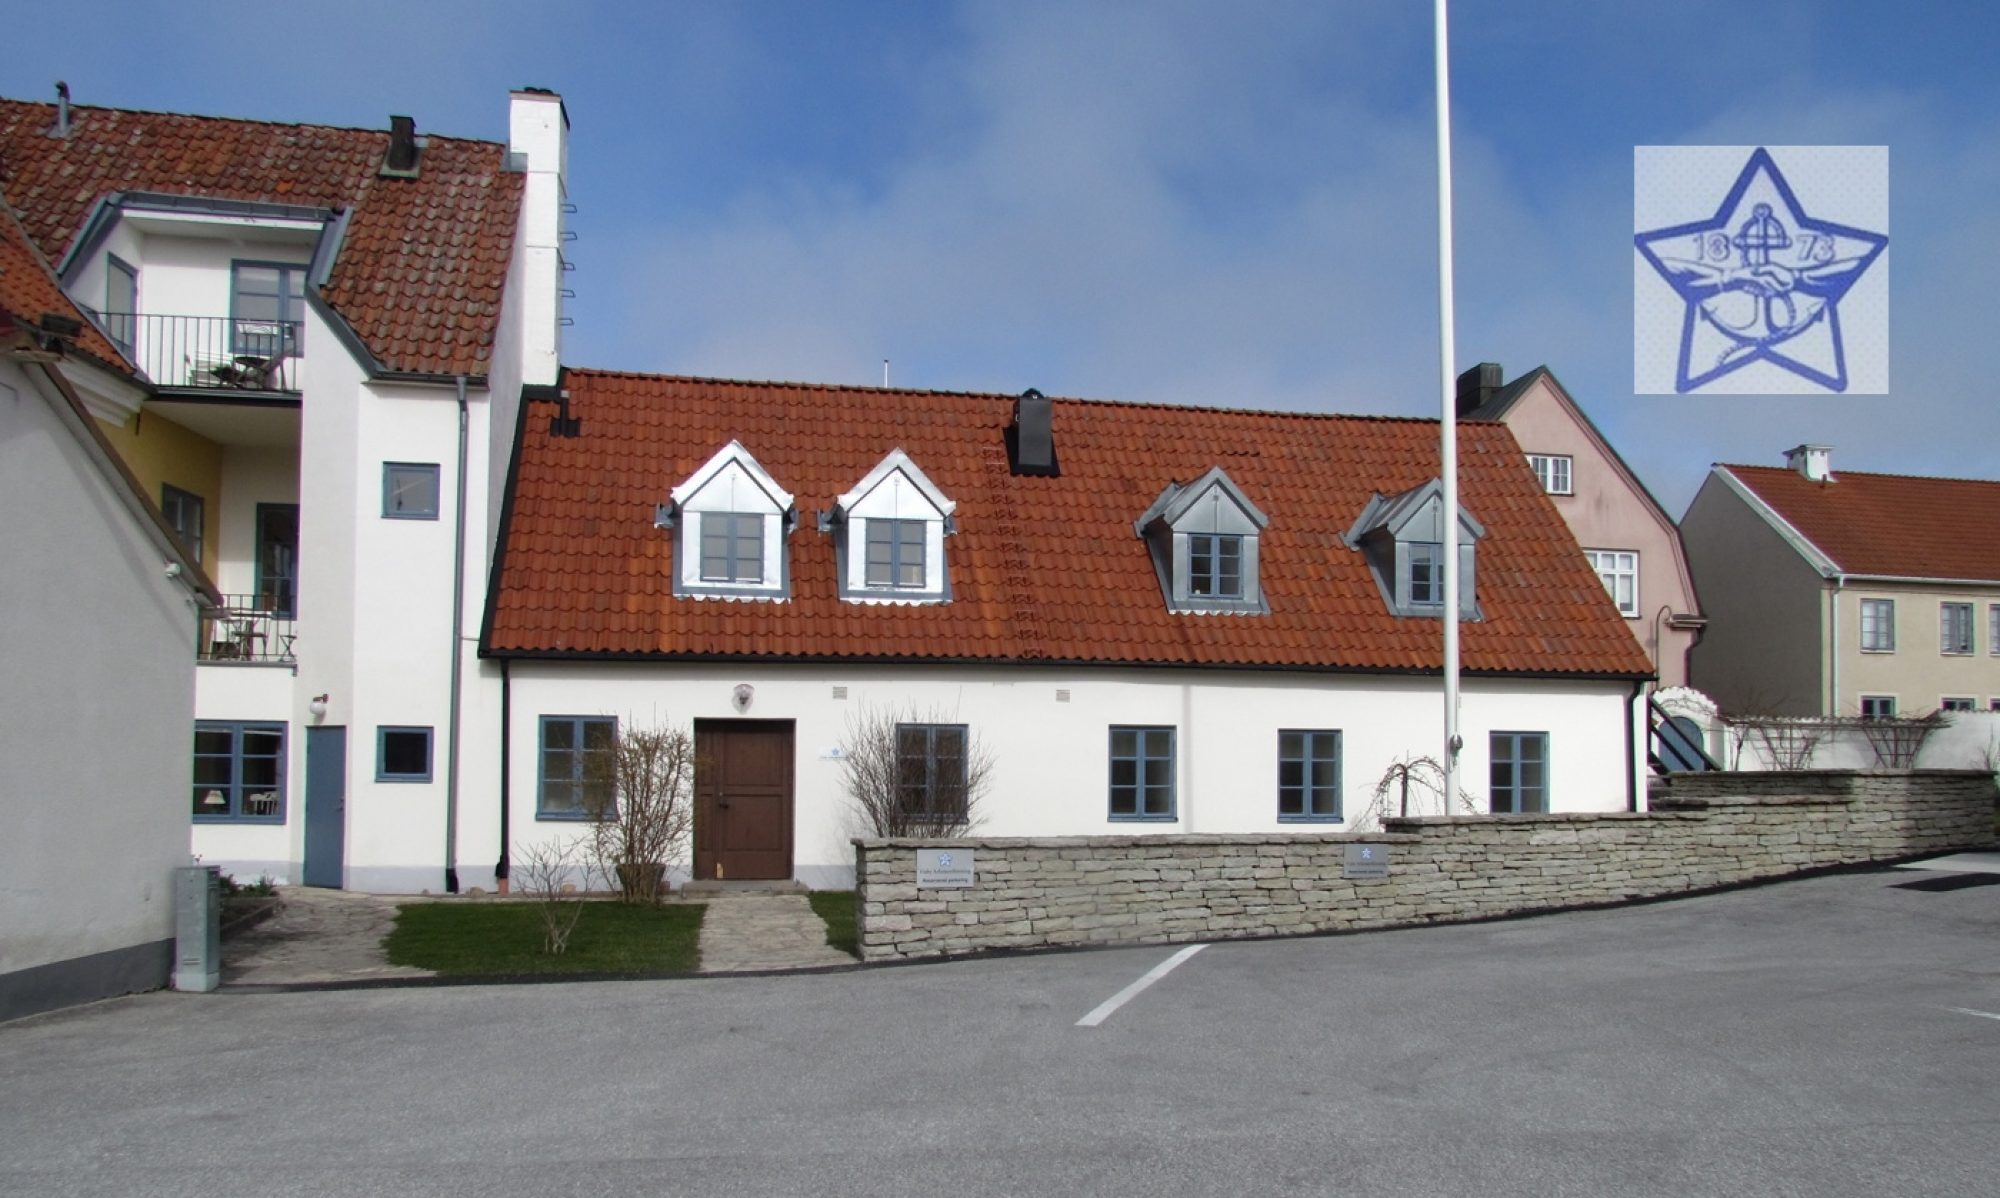 Välkommen till Visby Arbetareförening